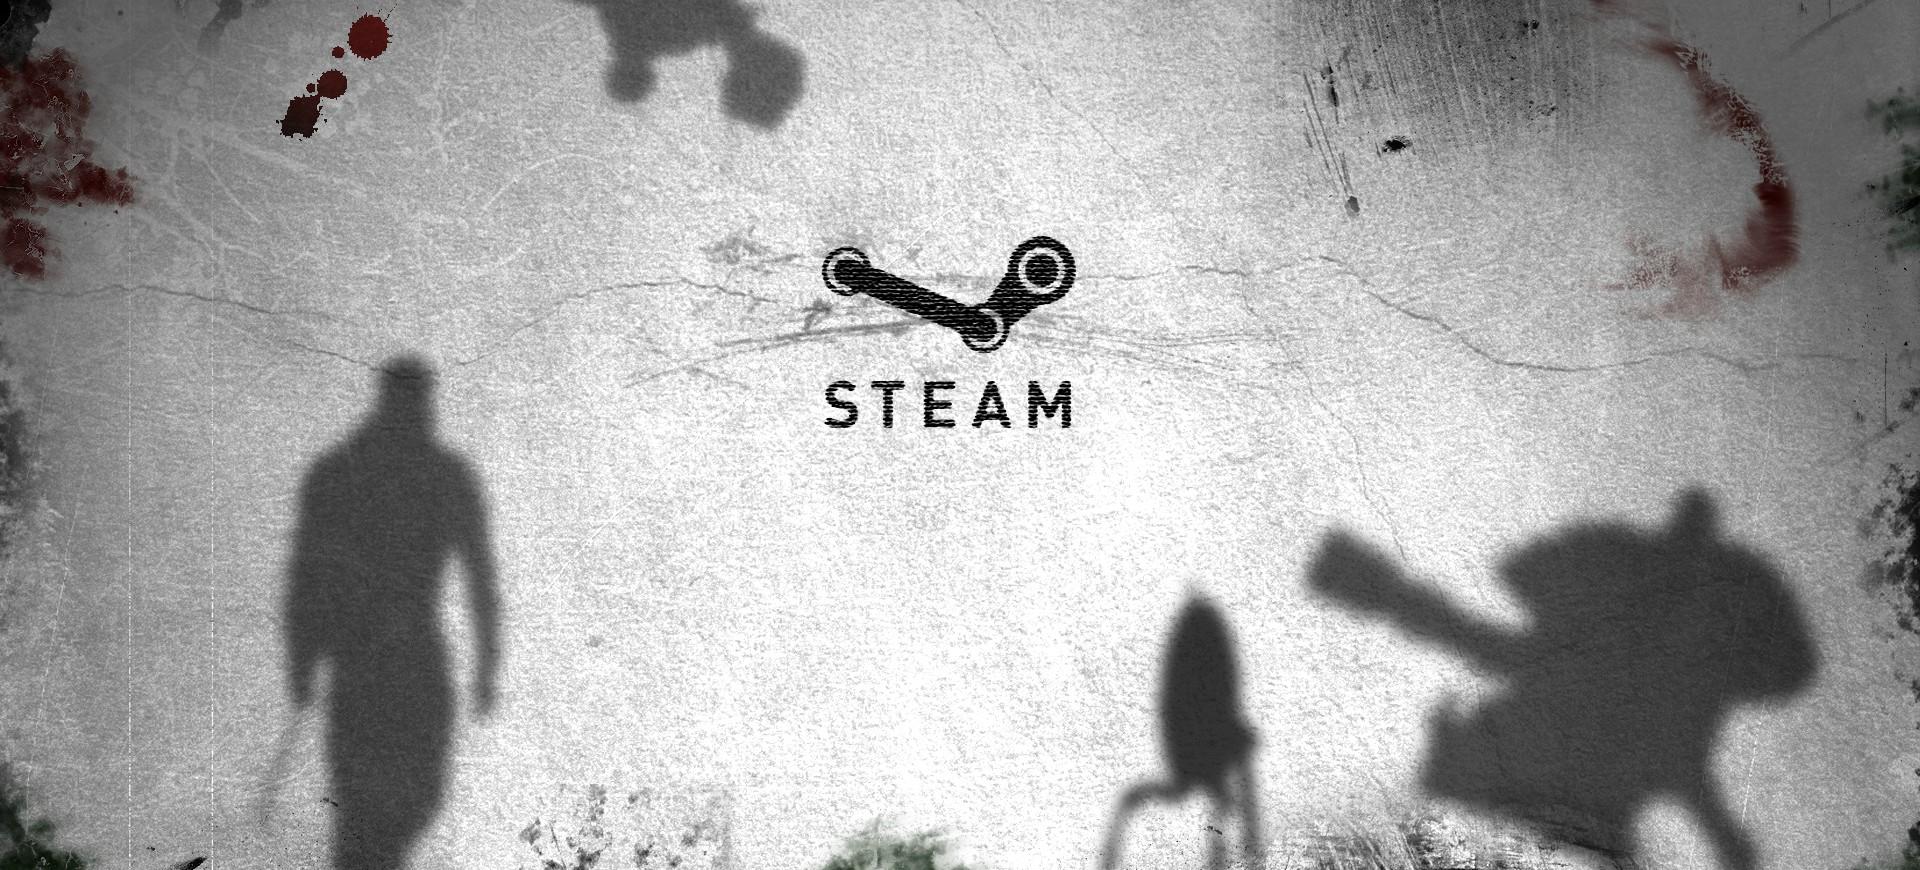 Valve xin lỗi game thủ vì sự cố ảnh hưởng tới 34.000 tài khoảng Steam